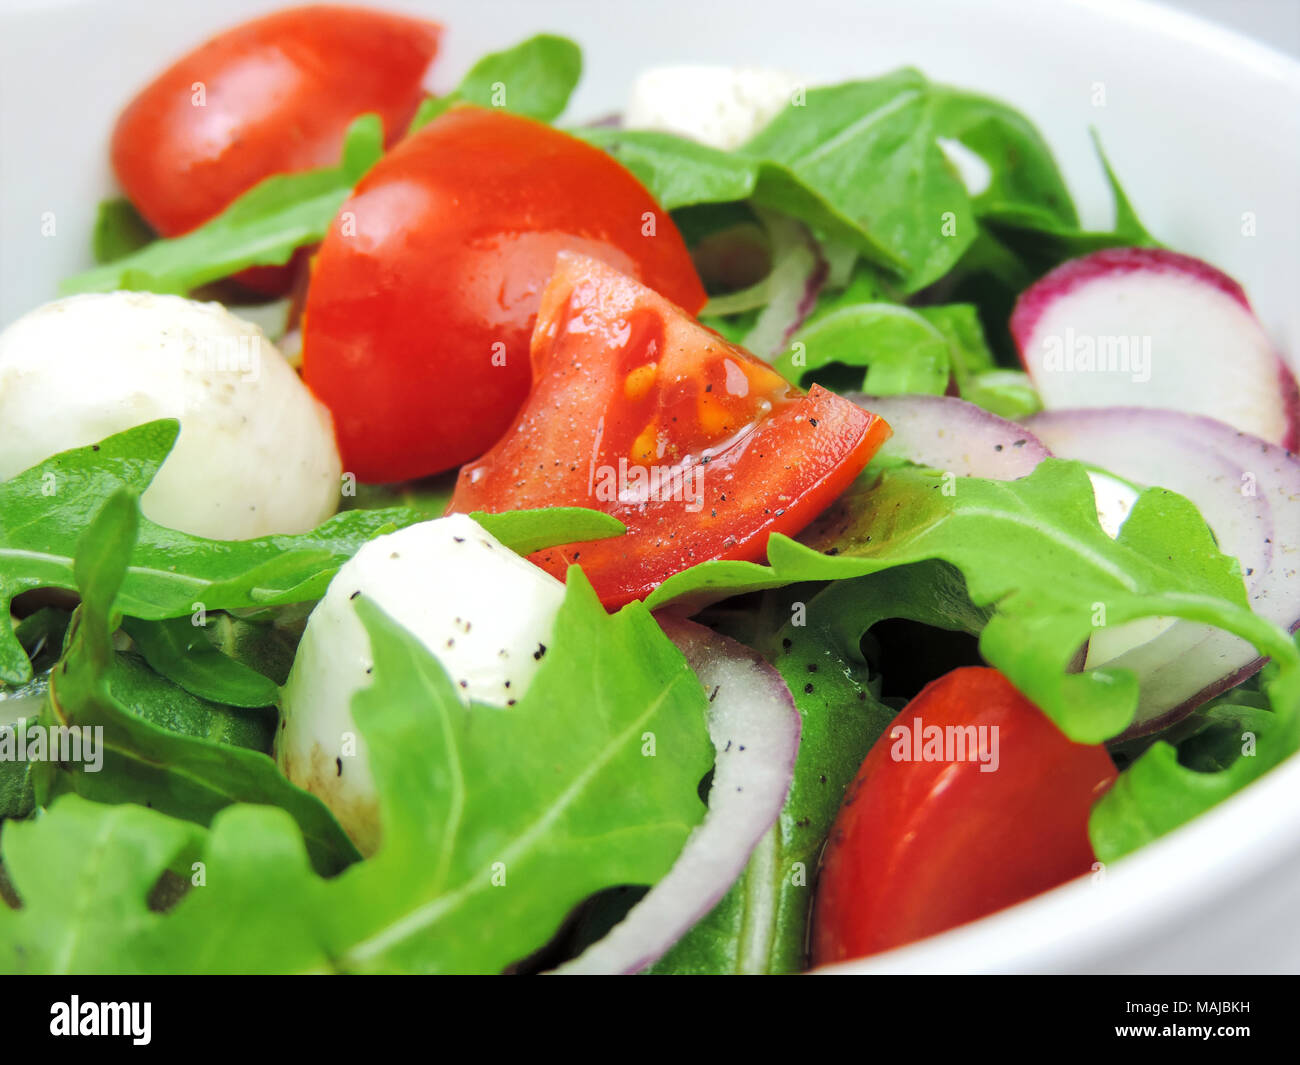 Salade gourmande ou frais salade caprese avec tomates, oignons rouges, roquette et mozzarella fromage sur une assiette blanche. Gros plan de salade fraîche. Banque D'Images